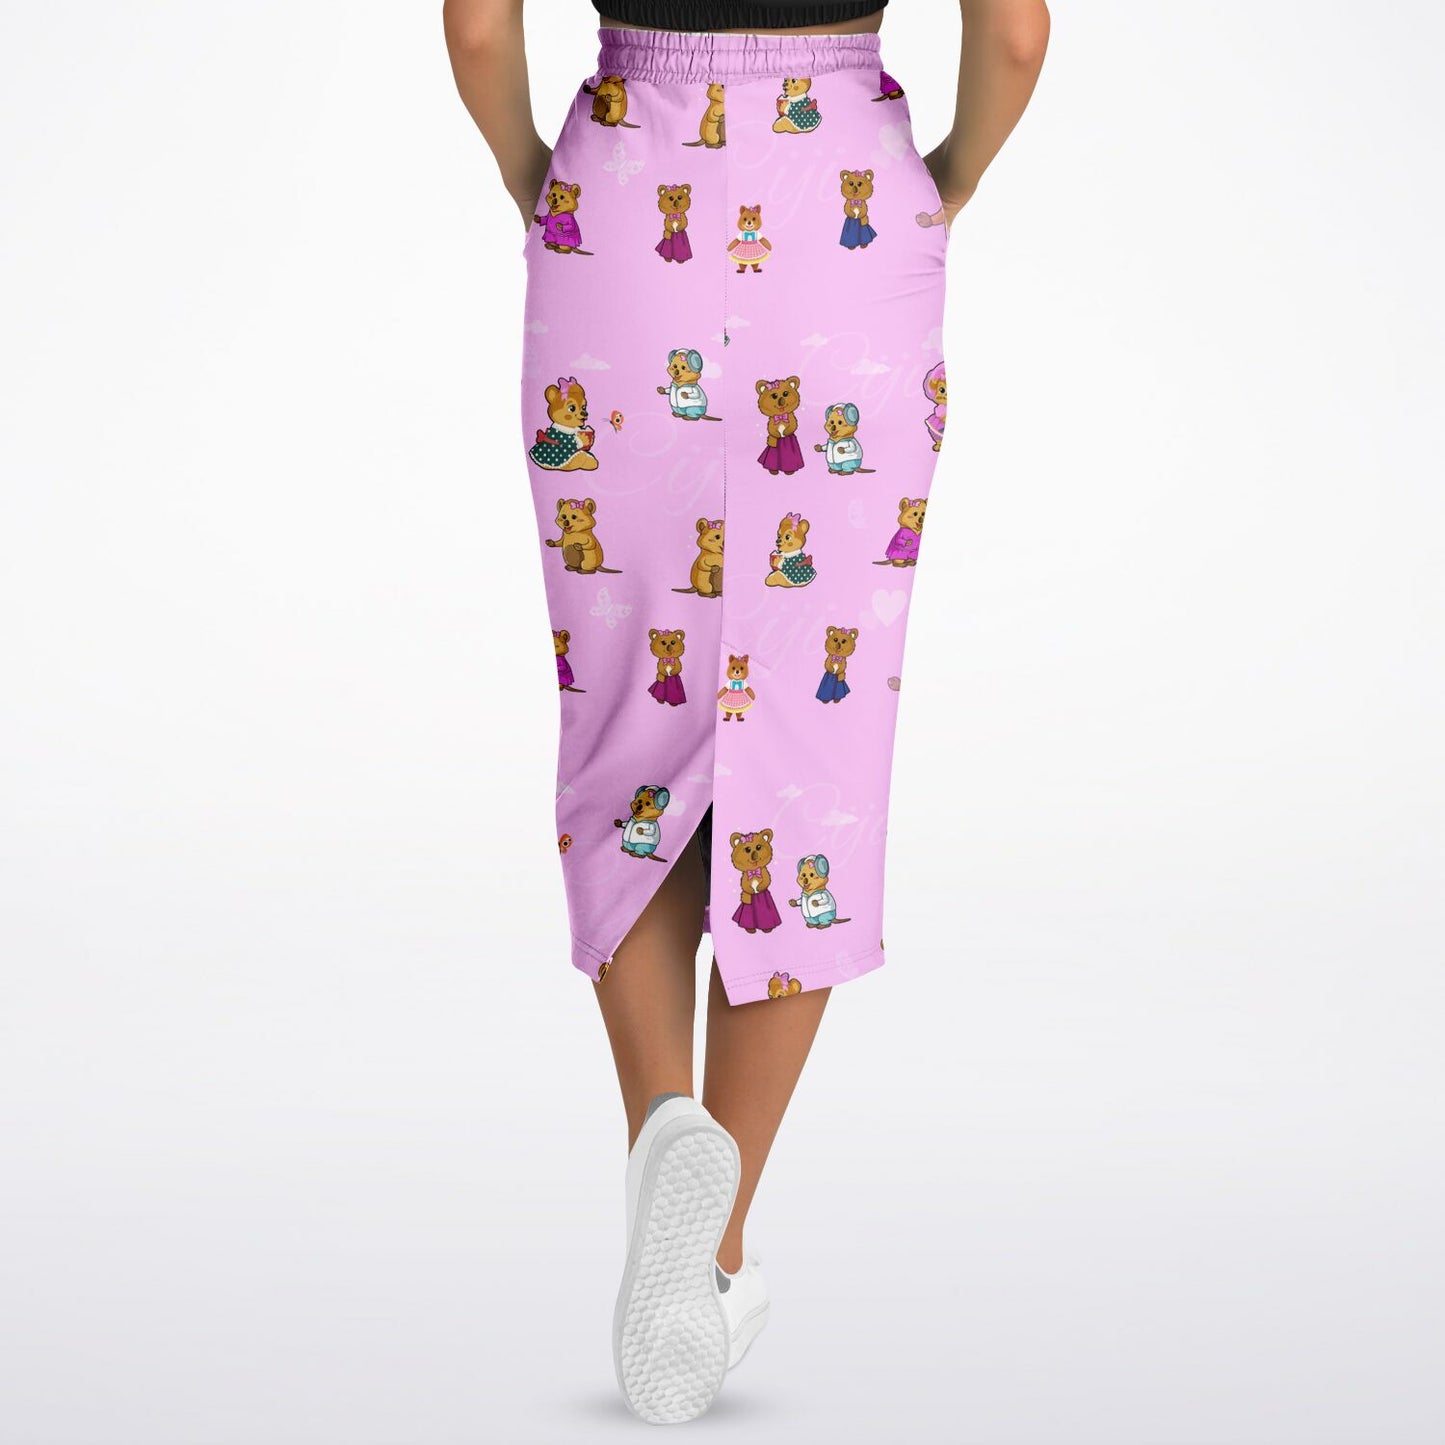 Ciji and Makenna's Playful Spirit Fashion Long Pocket Skirt Pink